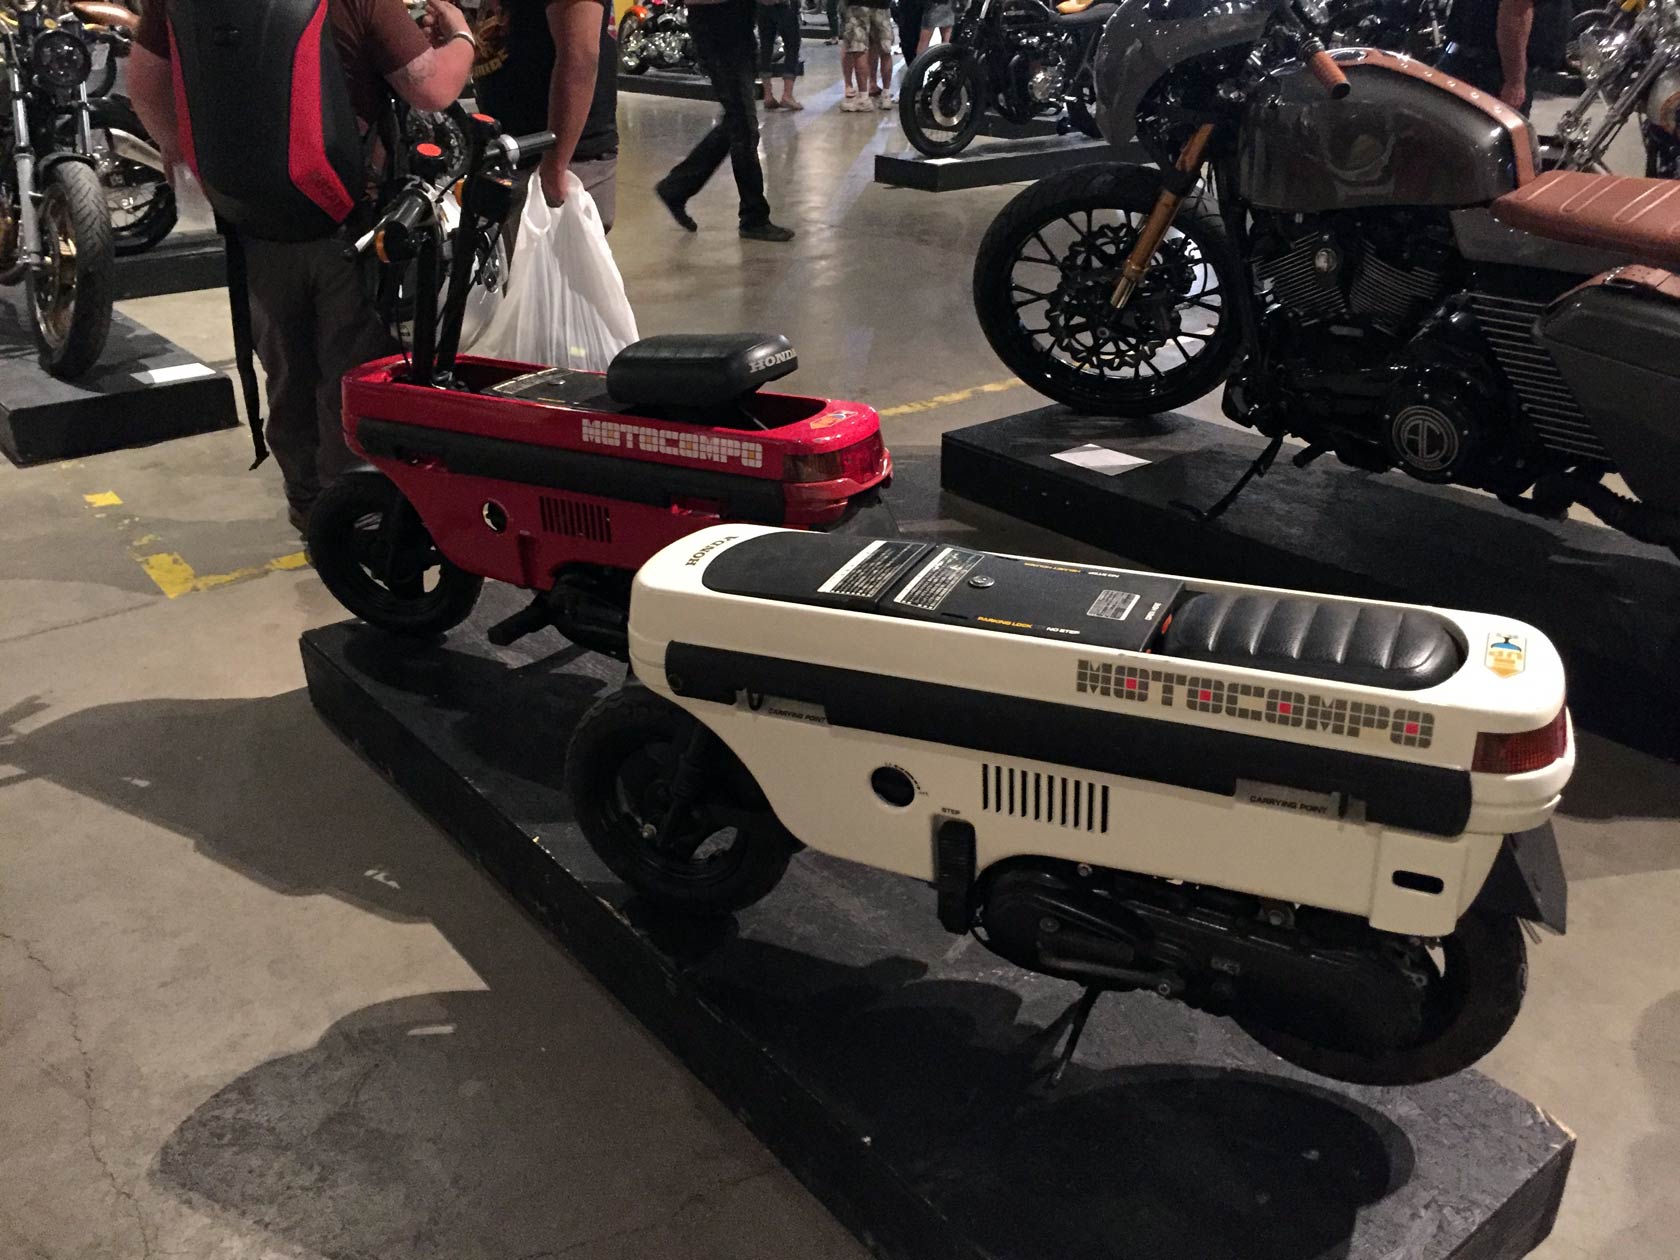 2019 Handbuilt Motorcycle Show